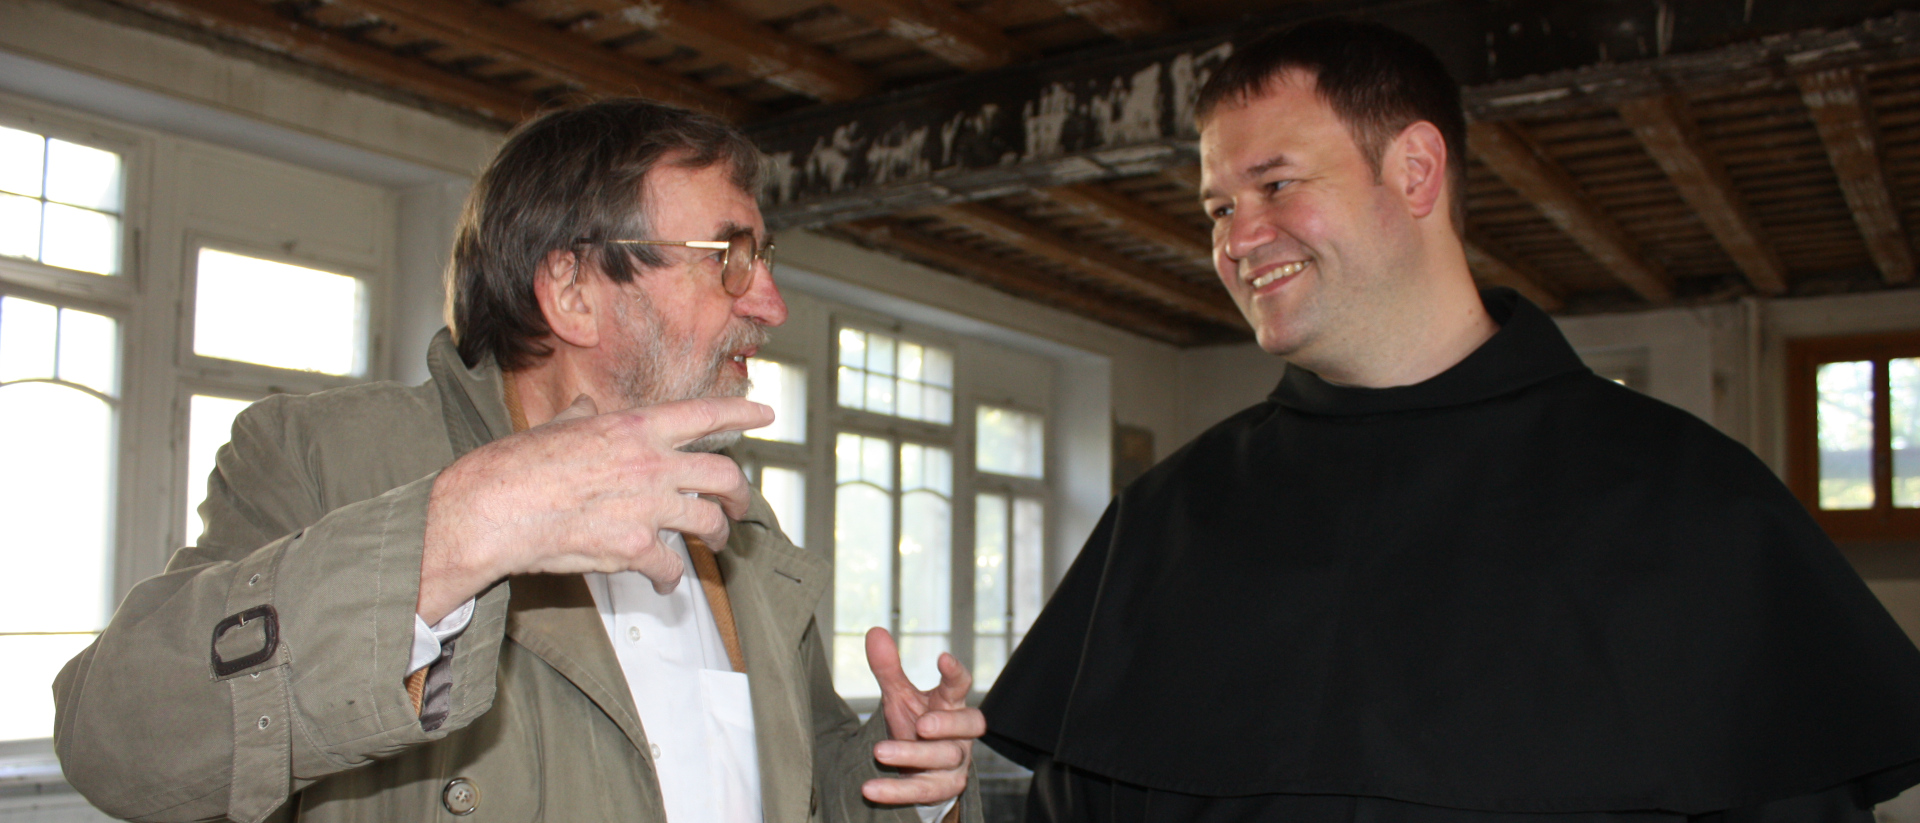 Fritz Oser s'était beaucoup impliqué pour la rénovation du couvent des cordeliers de Fribourg. Ici avec le Père Pascal Marquard |  © Josef Bossart